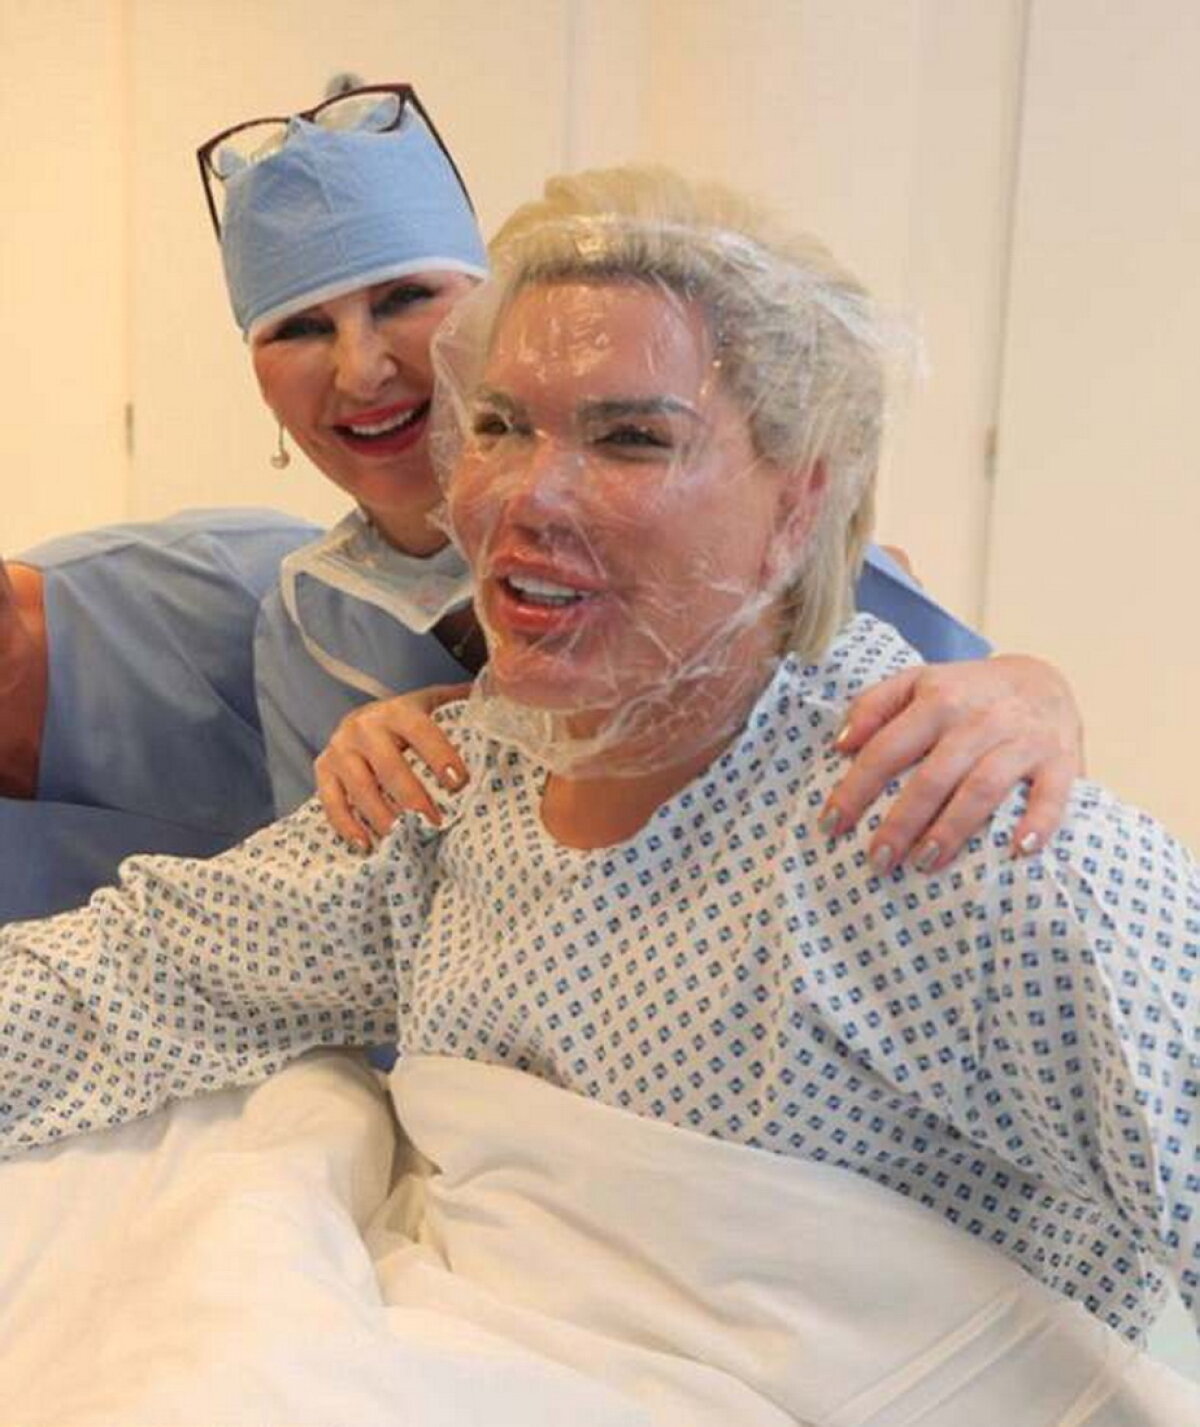 GALERIE FOTO Ultima nebunie a păpuşii umane Ken: Şi-a injectat celule stem în faţă!